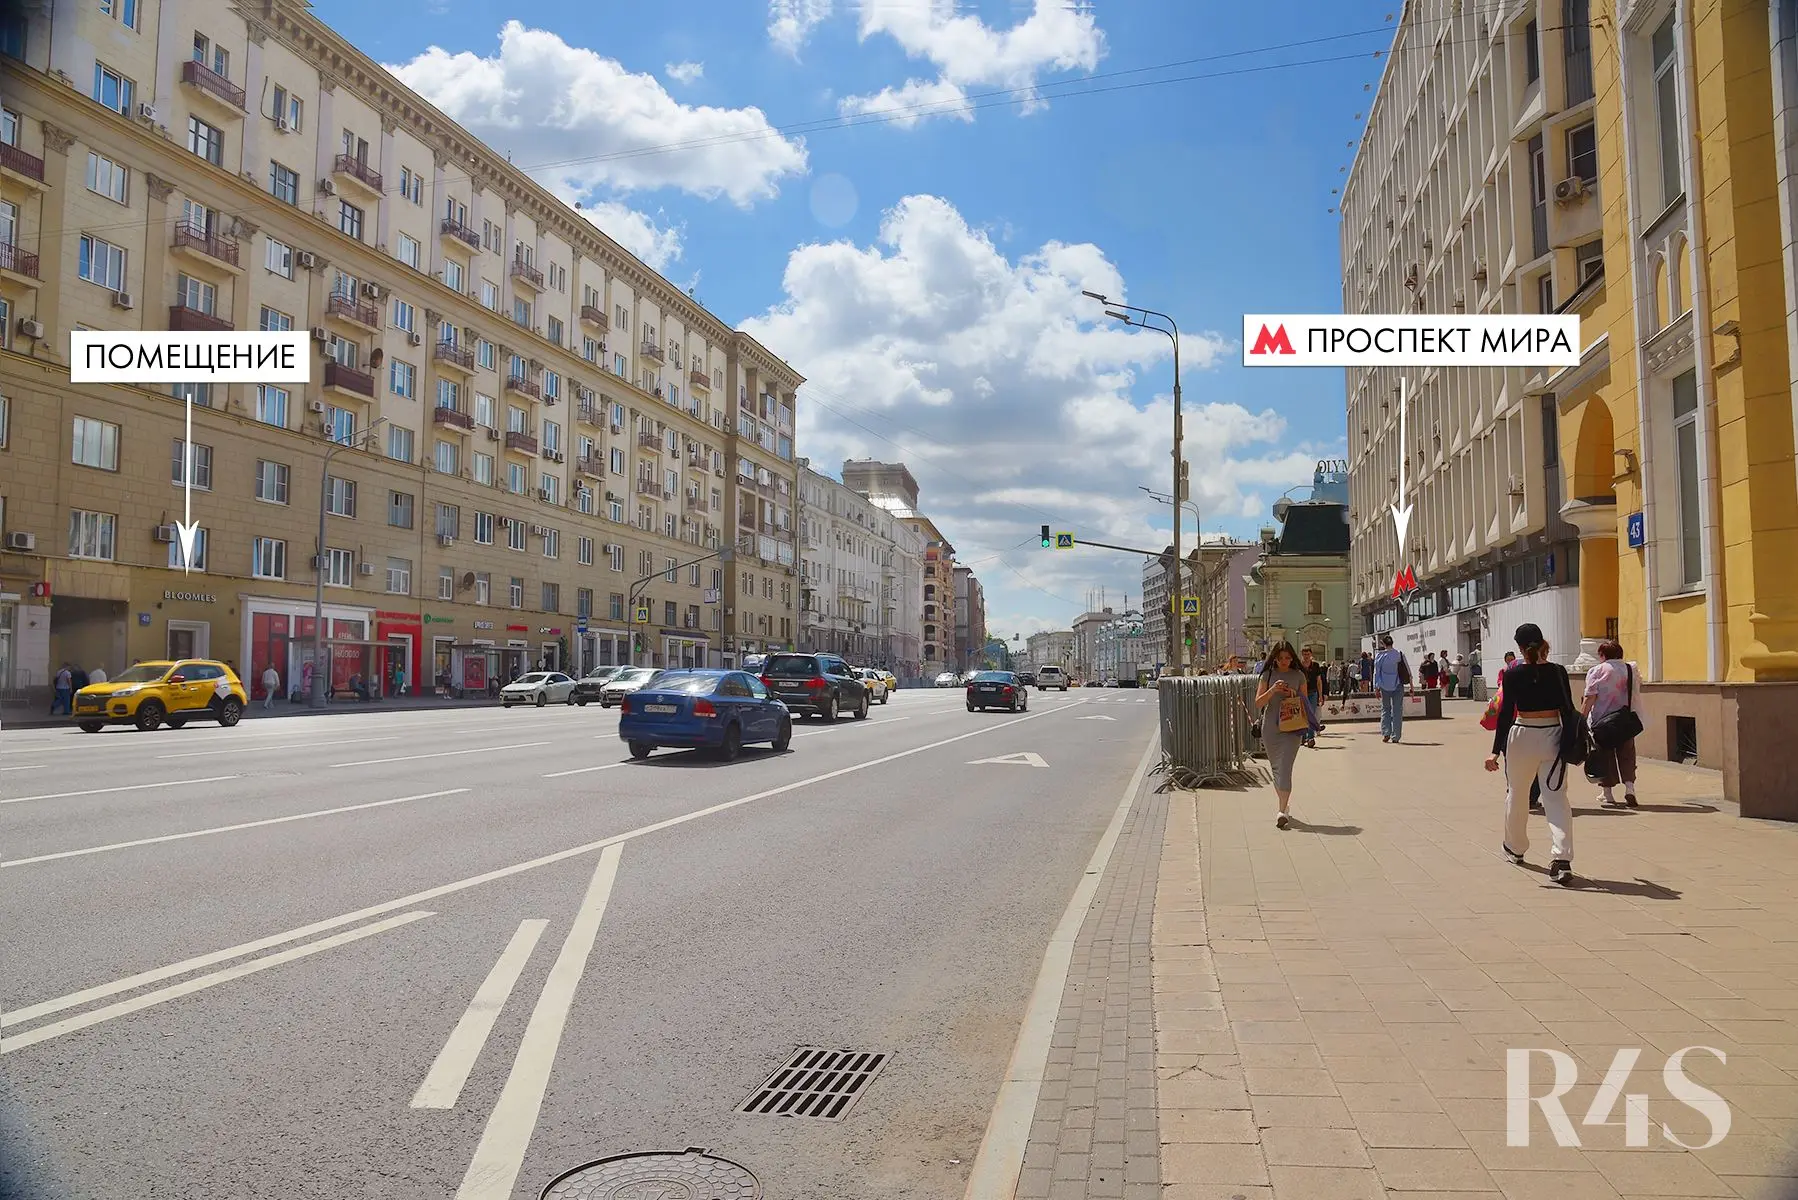 Продажа готового арендного бизнеса площадью 15.1 м2 в Москве: проспект Мира, 48 R4S | Realty4Sale